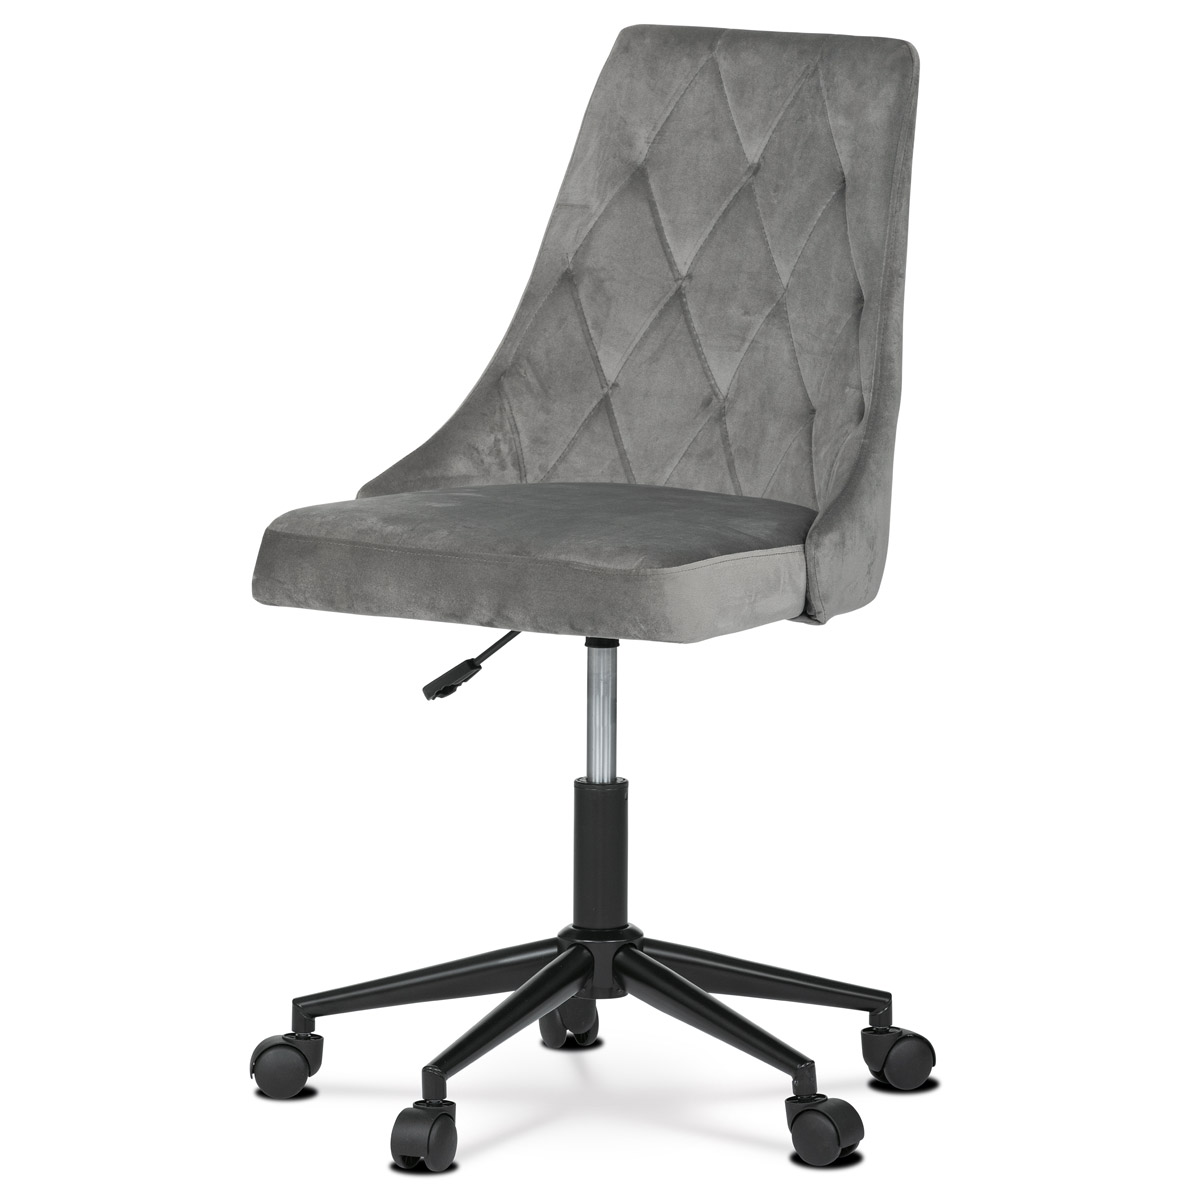 Pracovní židle, potah šedá sametová látka, výškově nastavitelná a otočná, černý kovový kříž